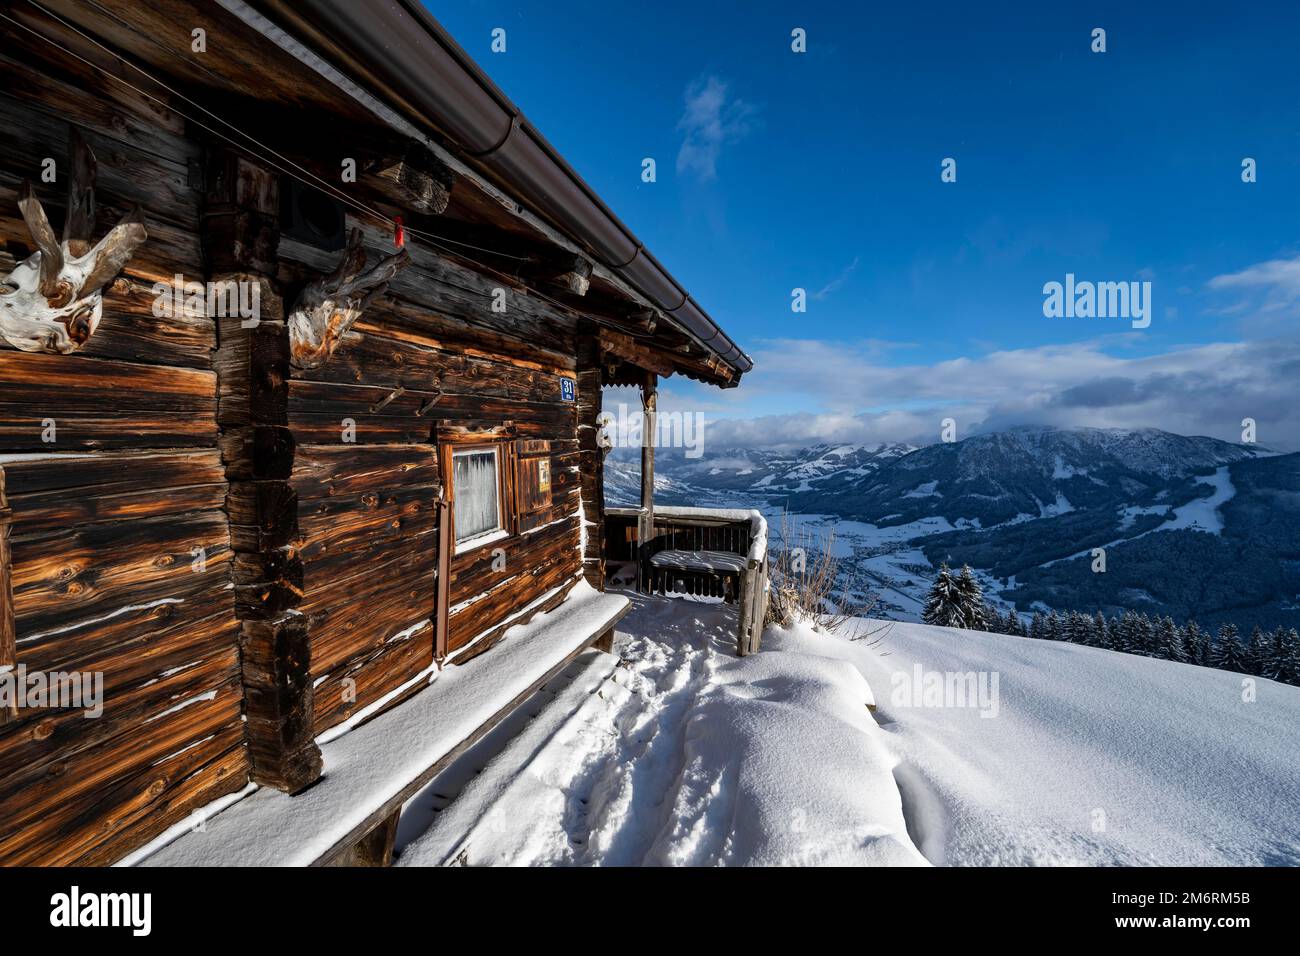 Rifugio tradizionale nella neve, vista sulla valle, presso la zona sciistica Bixen im Thale, Tirolo, Austria Foto Stock